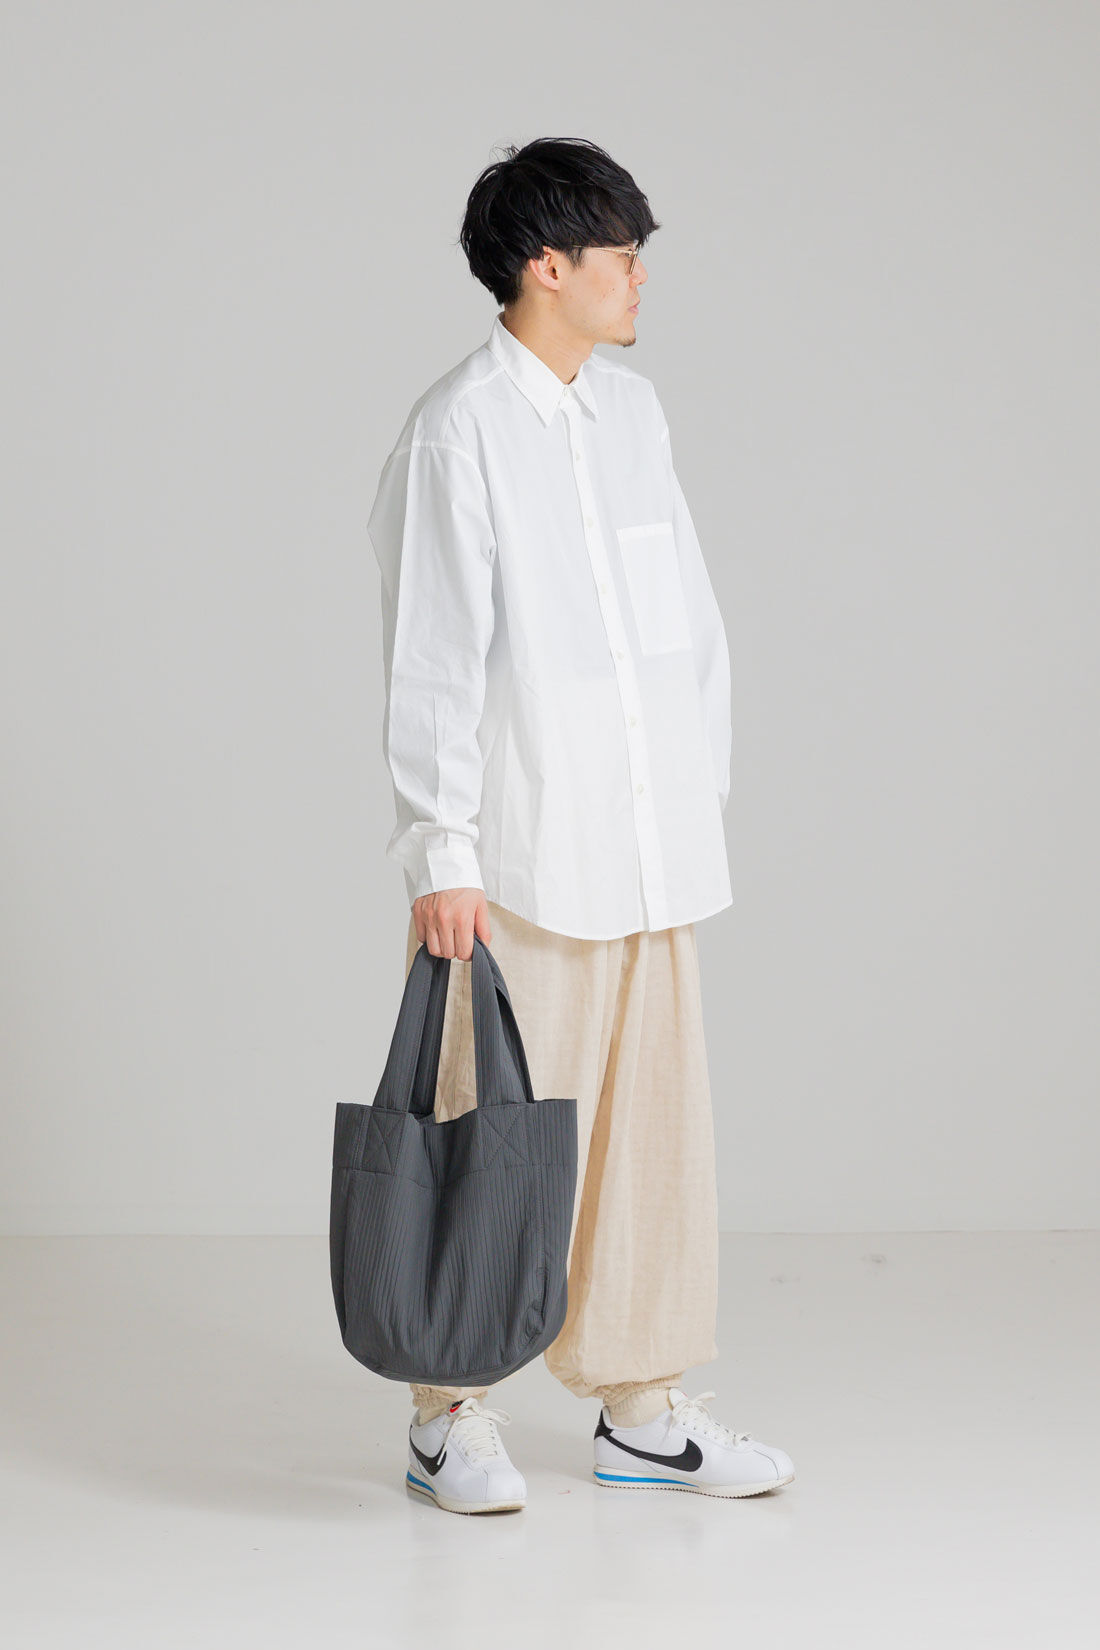 フェリシモMama|［Mama select］プリーツ素材のトートバッグ〈グレー〉|パパも持てるのがうれしい。ミニマルデザイン。